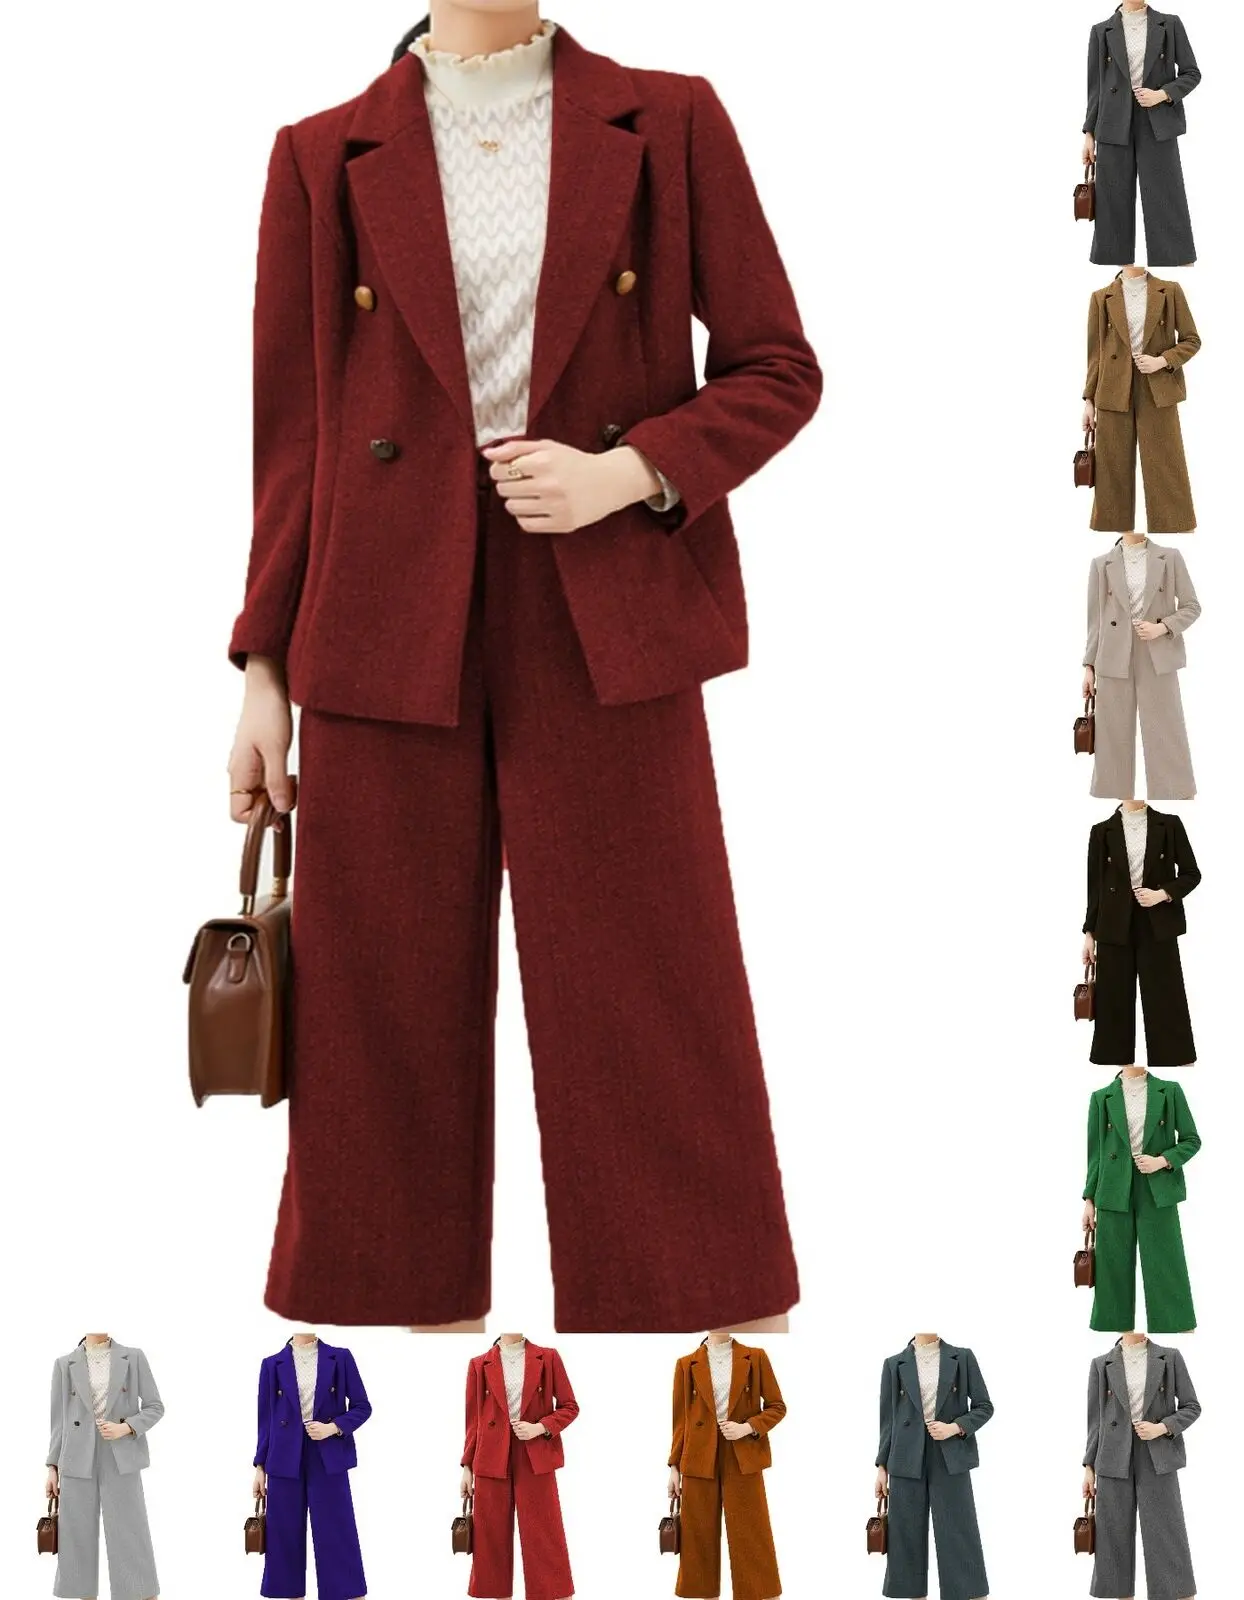 Women's Suit Lapel Slim Fit Custom 2 Piece Set of Wool Herringbone Tweed Casual Business